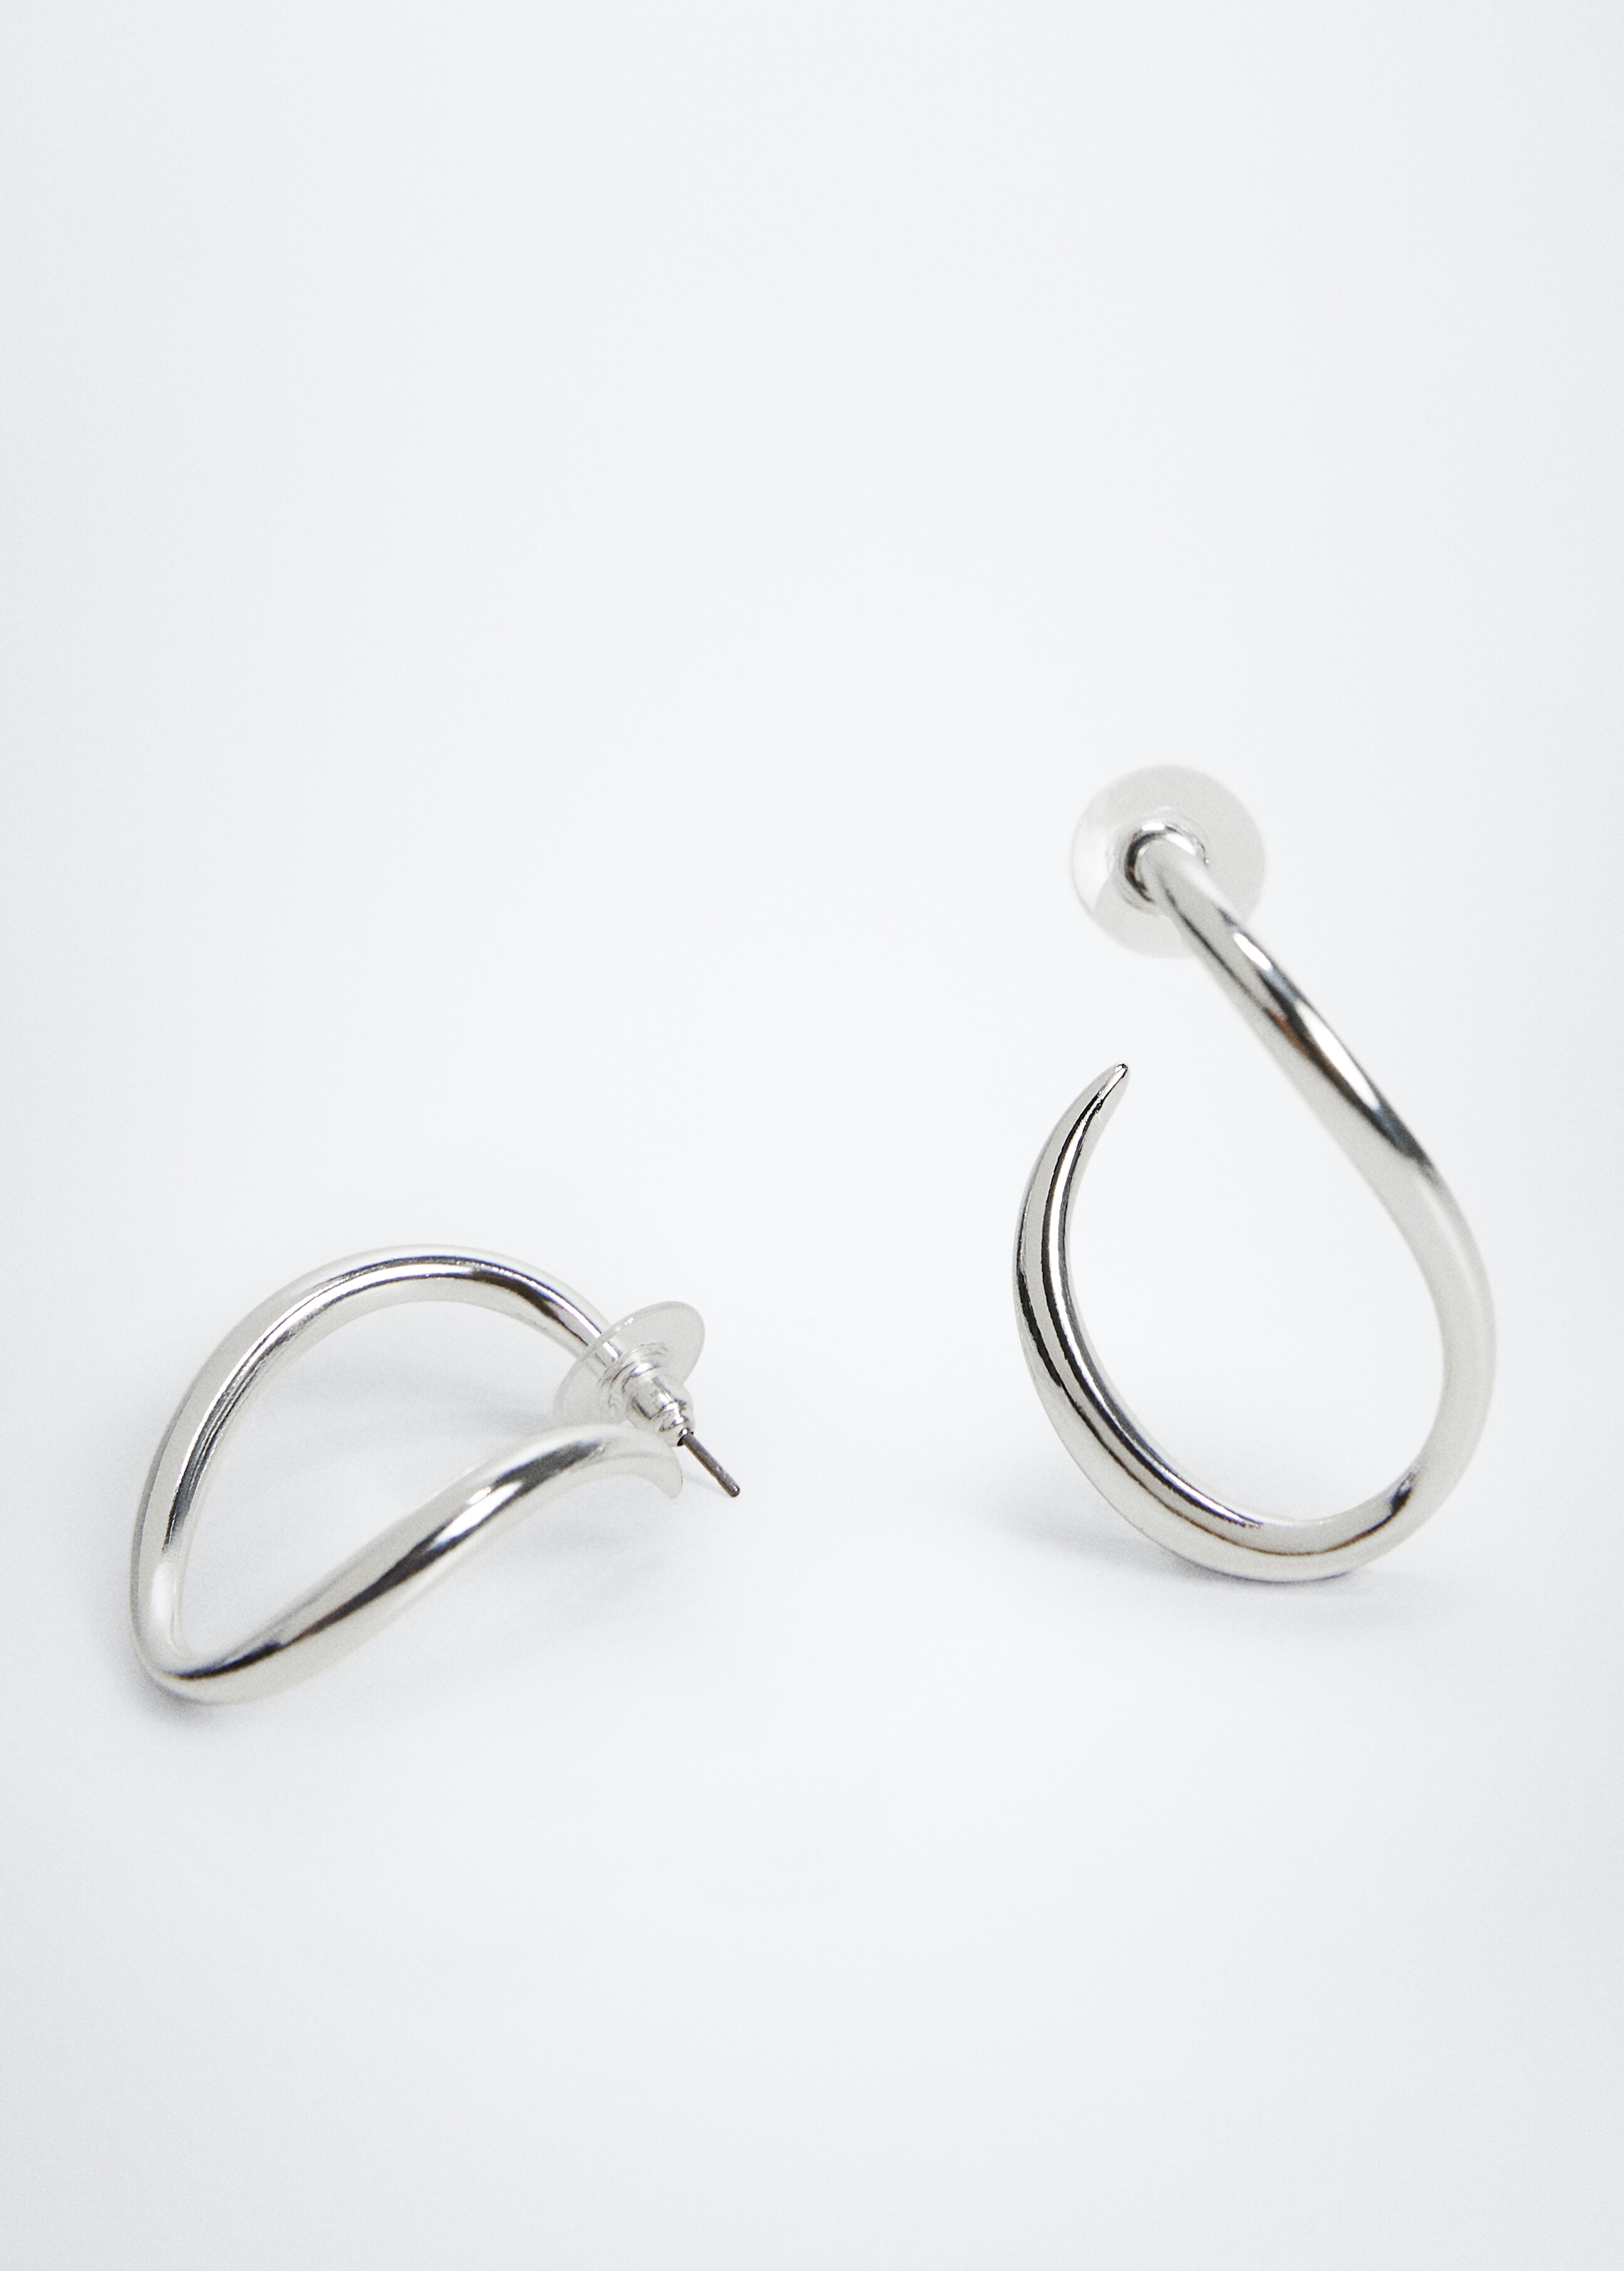 Twisted hoop earrings - Medium plane